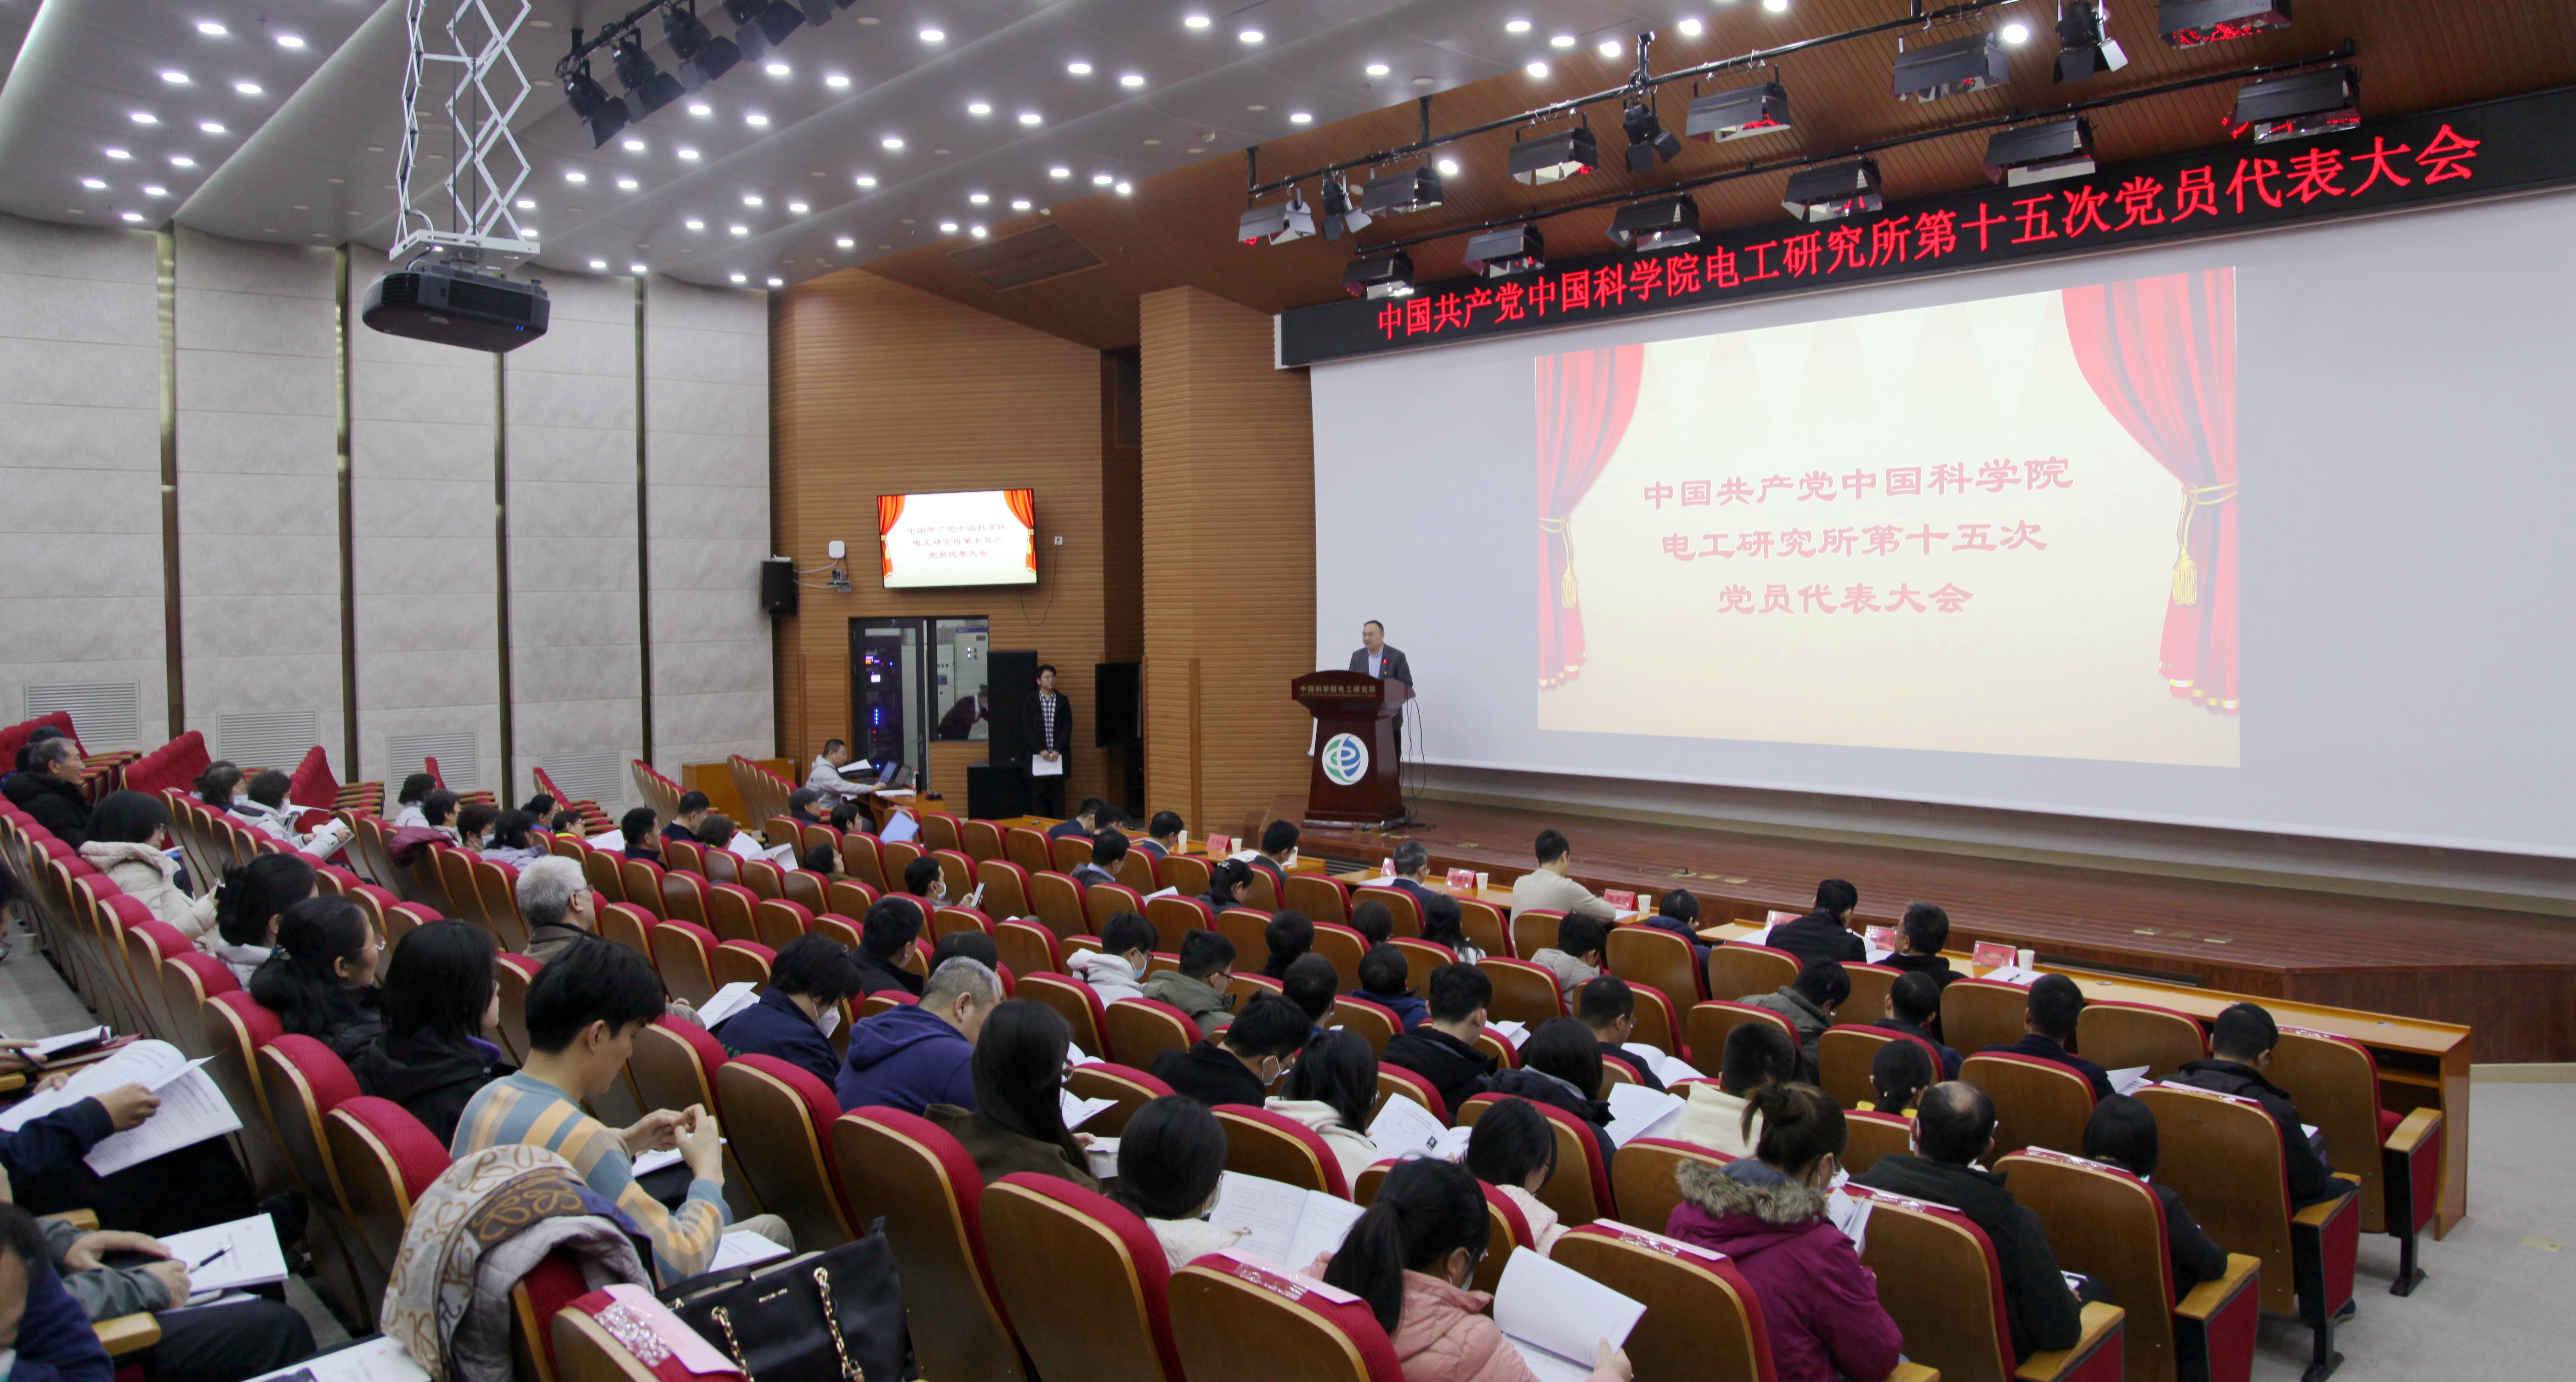 中国共产党优发国际第十五次党员代表大会胜利召开